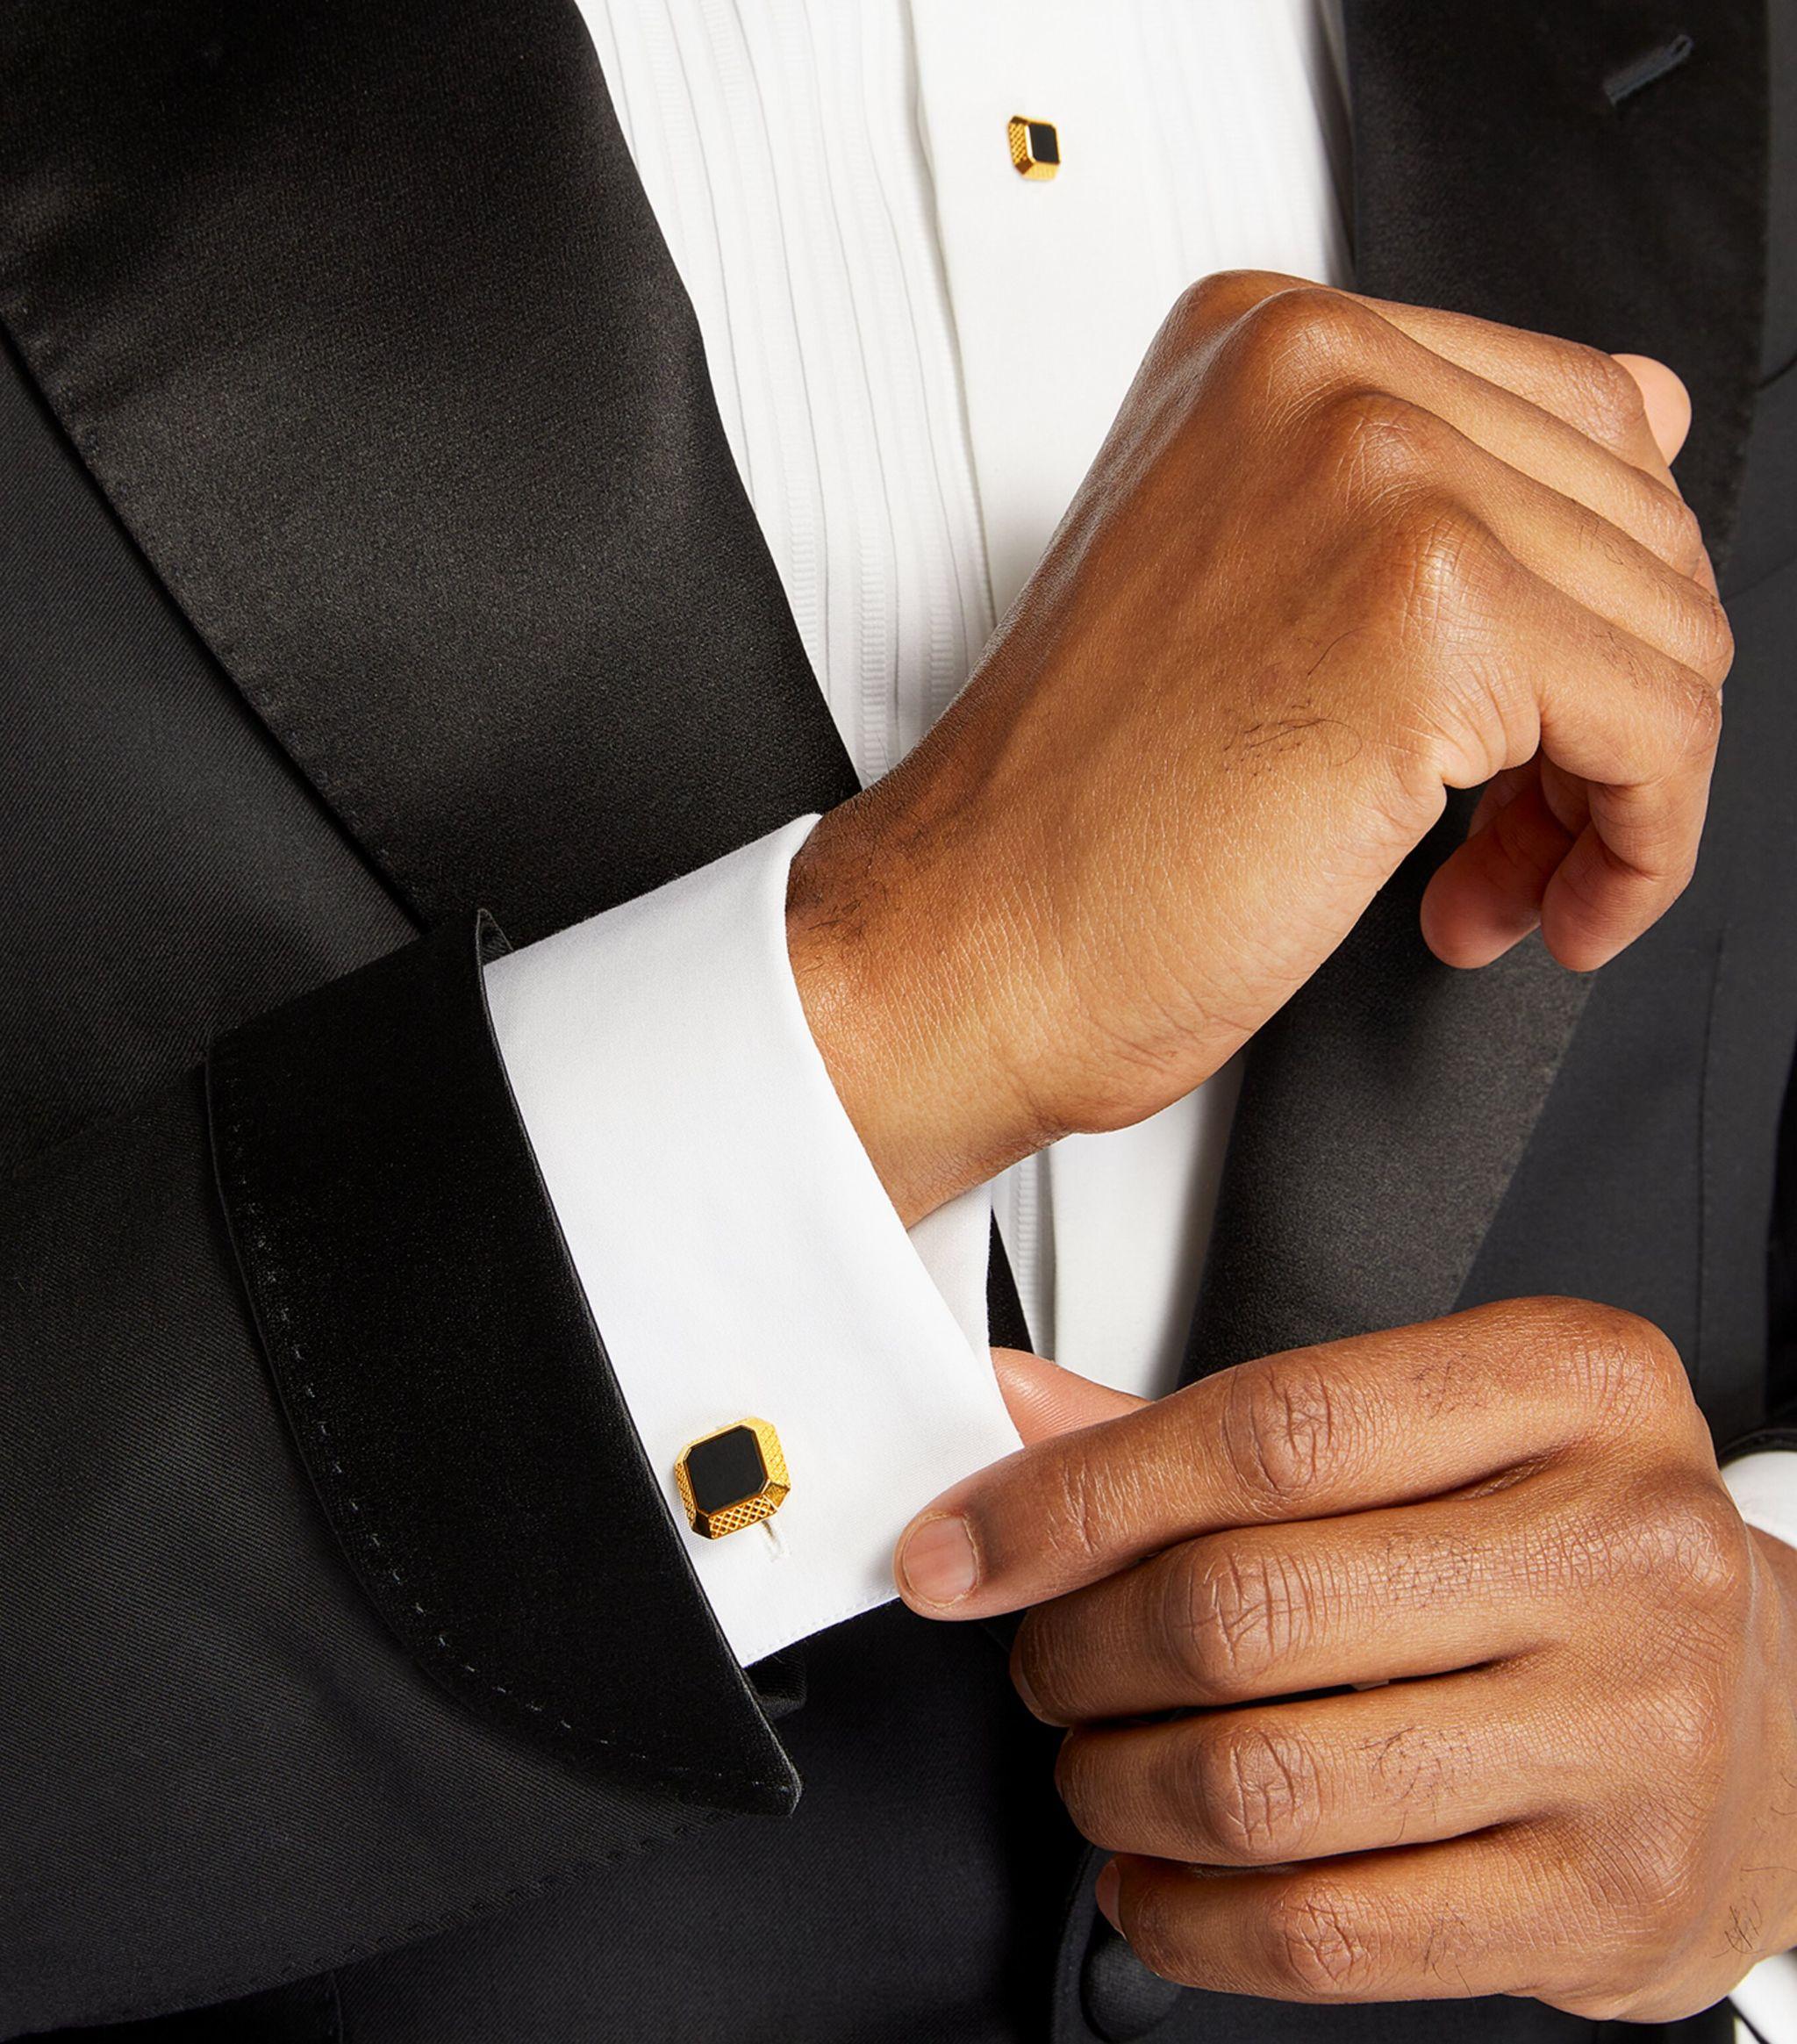 Tateossian Men's Gold-Plated Black Onyx Cufflinks